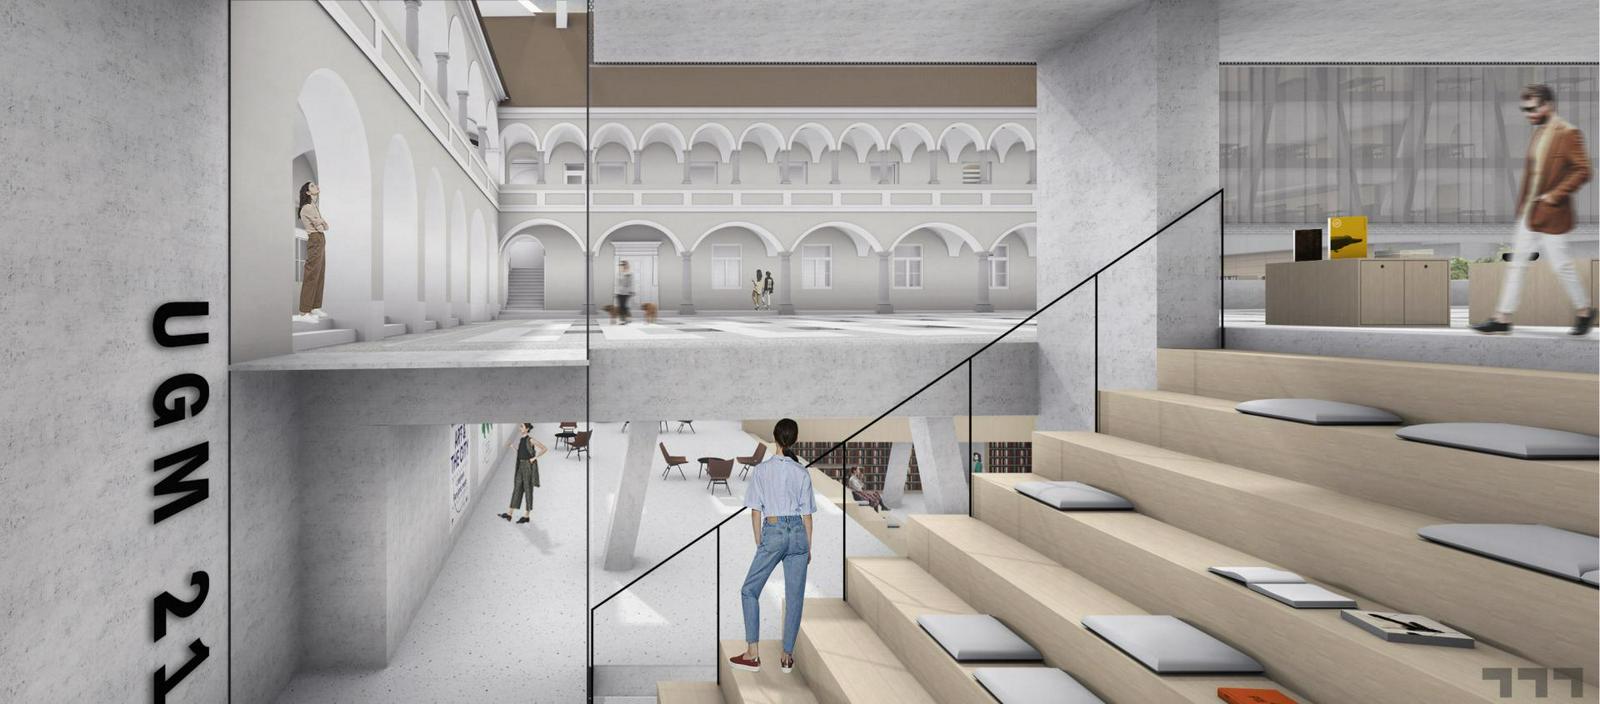 Celoten projekt gradnje in opreme Centra Rotovž bo stal 25 milijonov evrov, v njem pa bo poleg osrednje knjižnice in galerije našel svoje mesto tudi Art kino. Foto: Arhitekturni atelje Medprostor